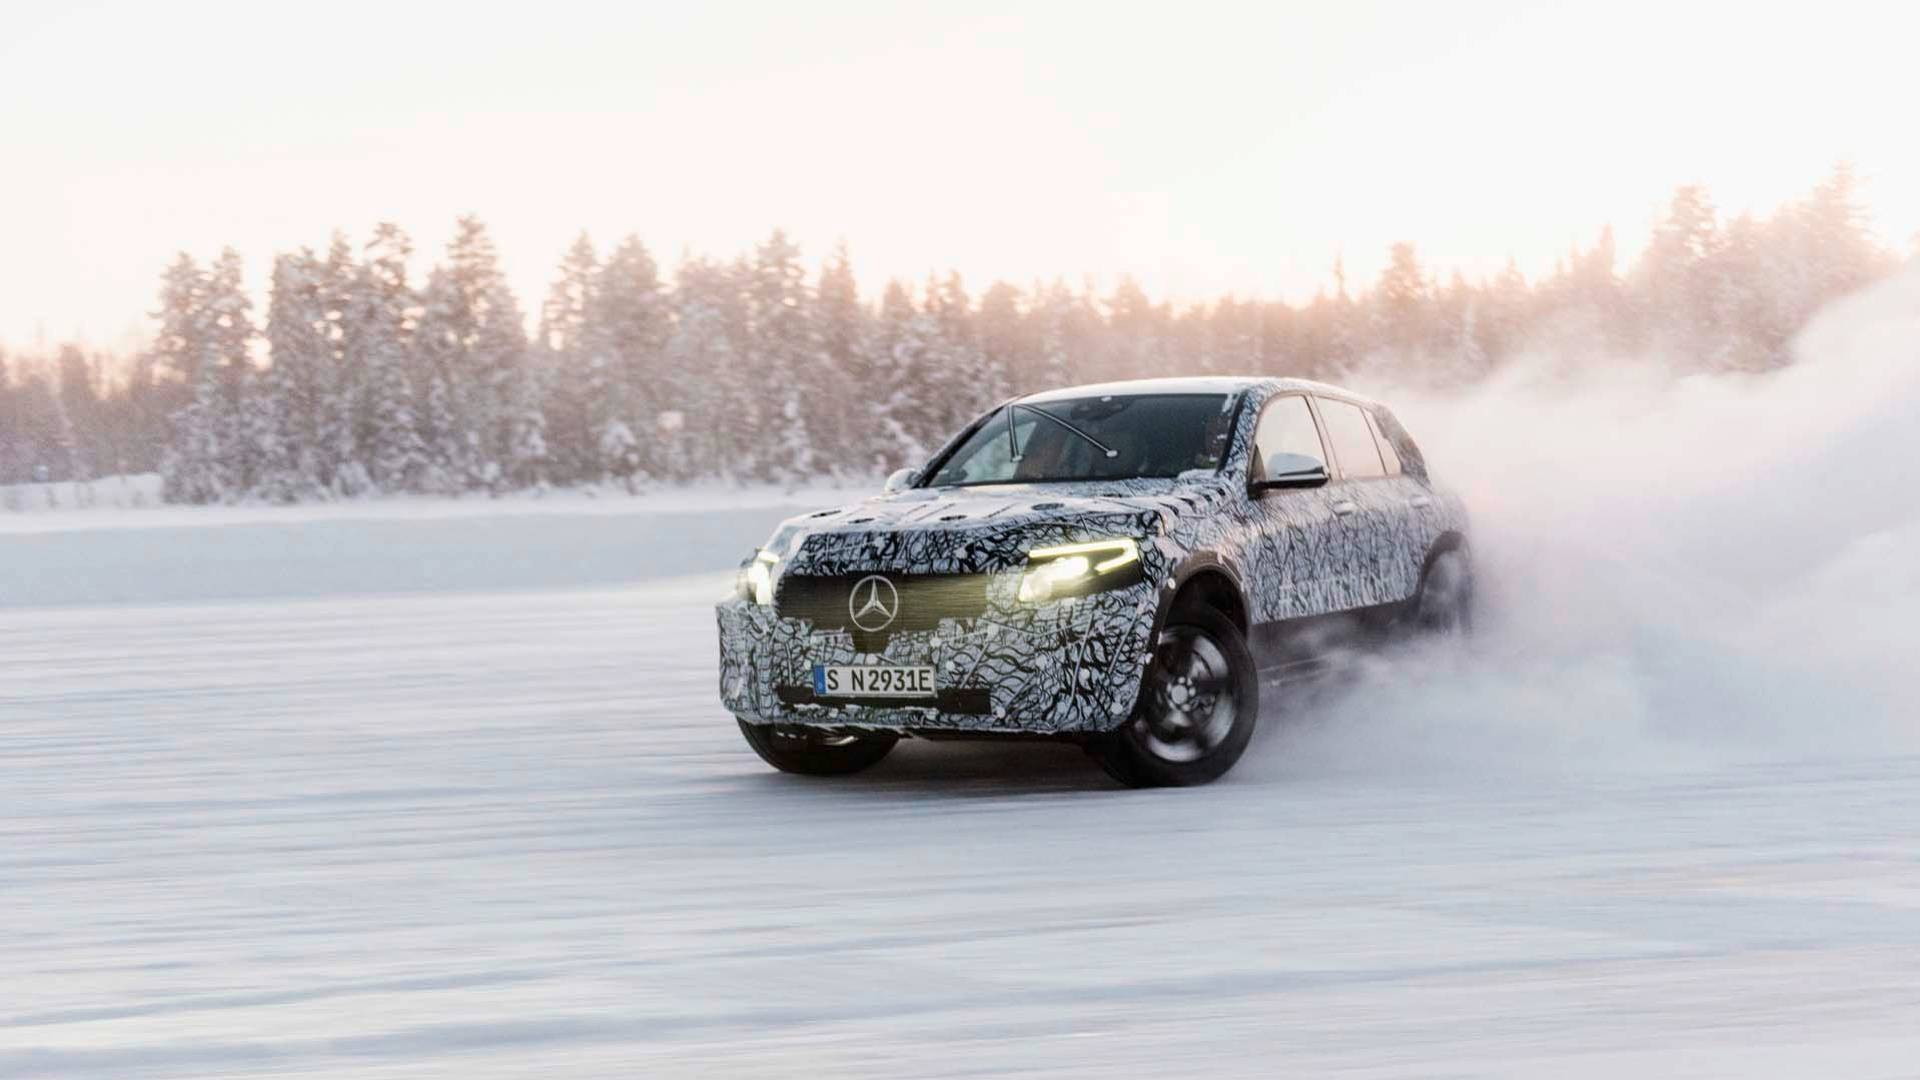 Mercedes-Benz EQC 2019: Ηλεκτρικά παιχνίδια στο χιόνι